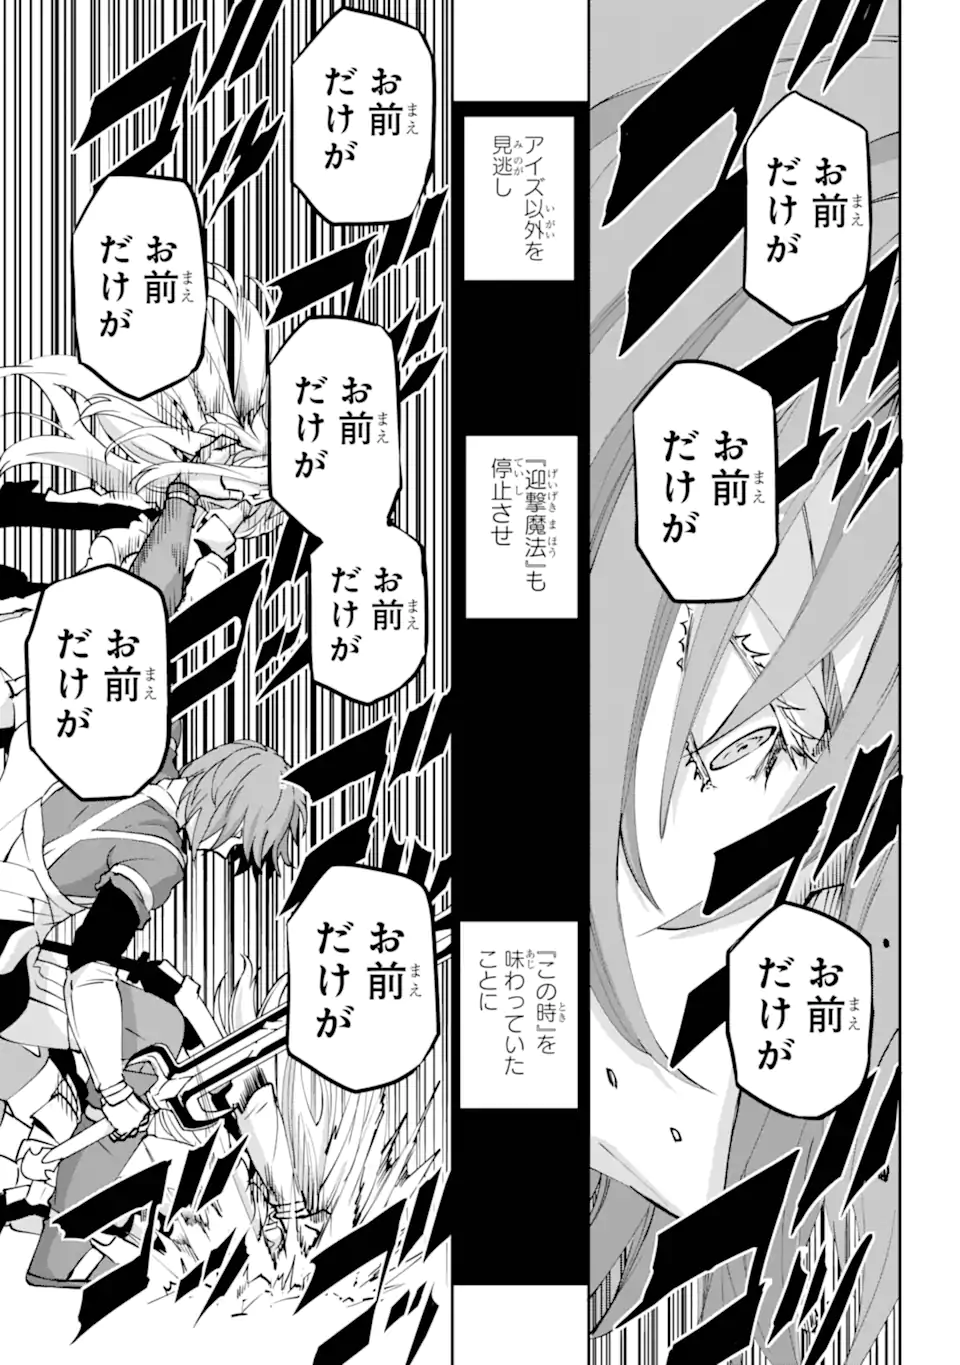 Dungeon ni Deai wo Motomeru no wa Machigatte Iru Darou ka Gaiden - Sword Oratoria - Chapter 119.3 - Page 2